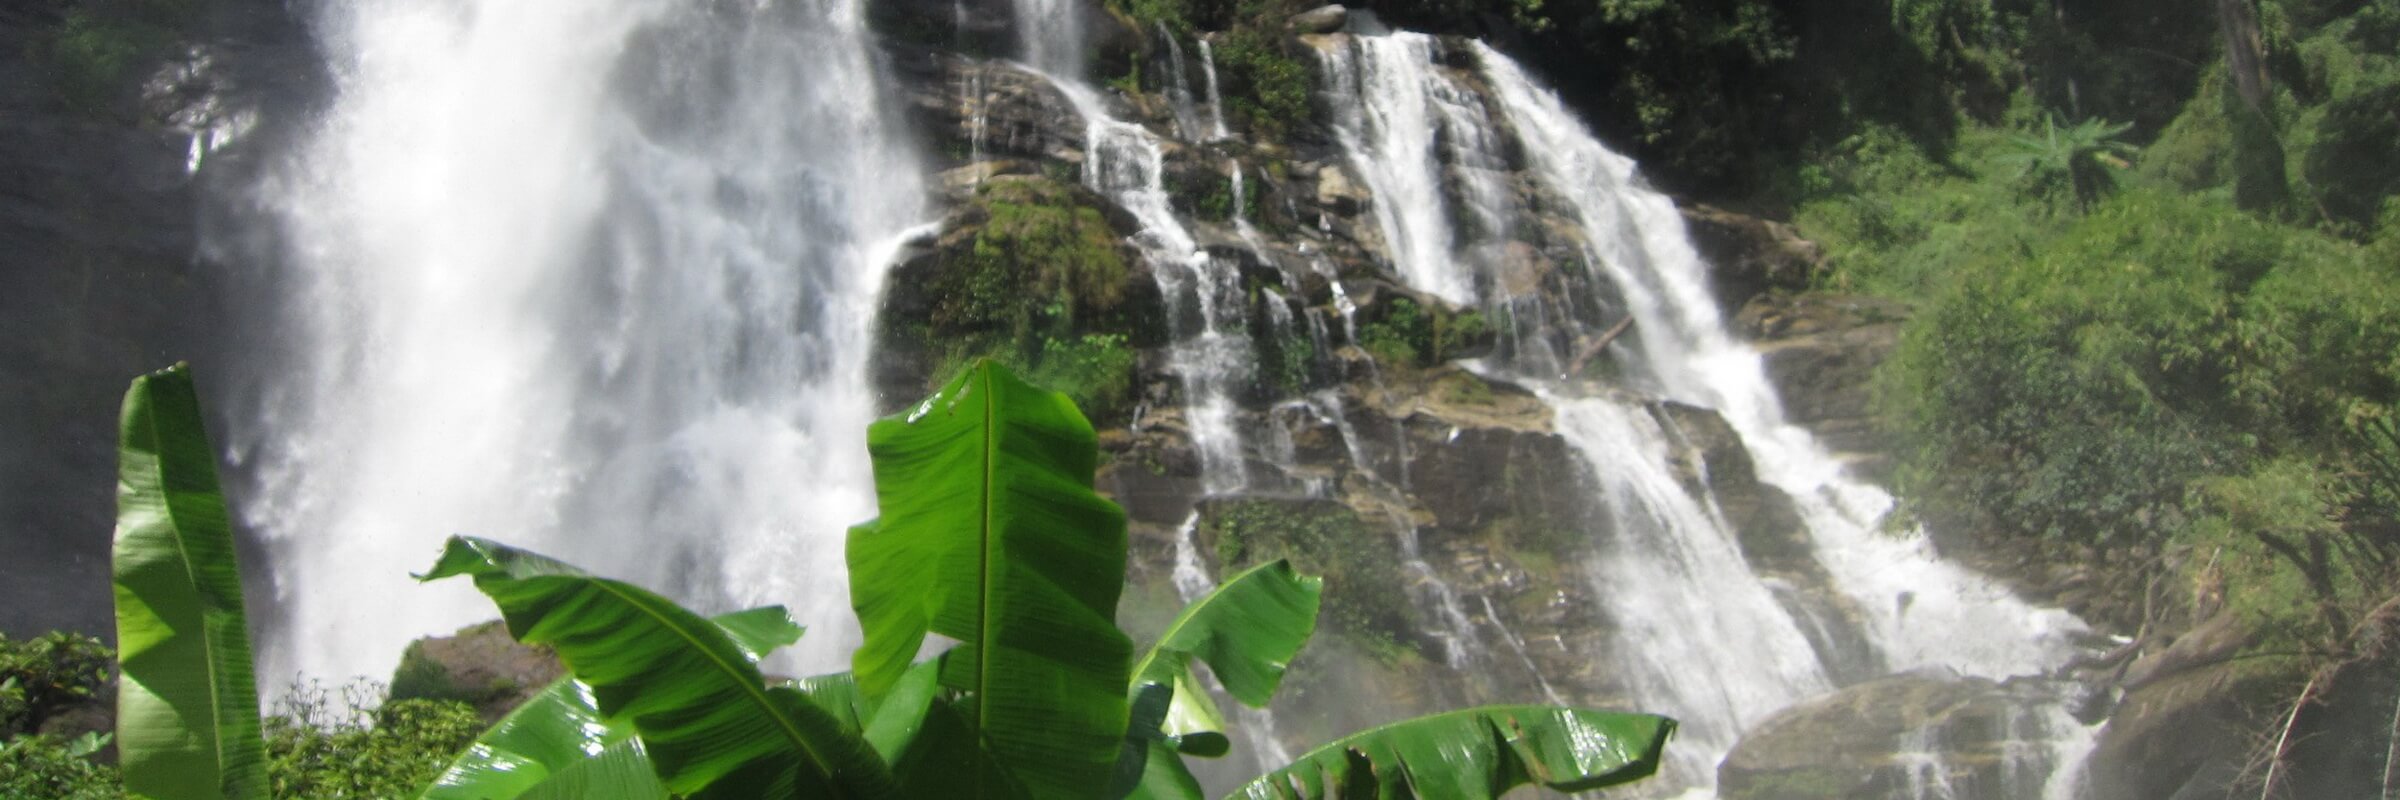 Der Vachirathan-Wasserfall ist im Ostteil des Nationalparks Doi Inthanon gelegen und fällt aus einer Höhe von 70 m aus der Mae Klang-Schlucht.